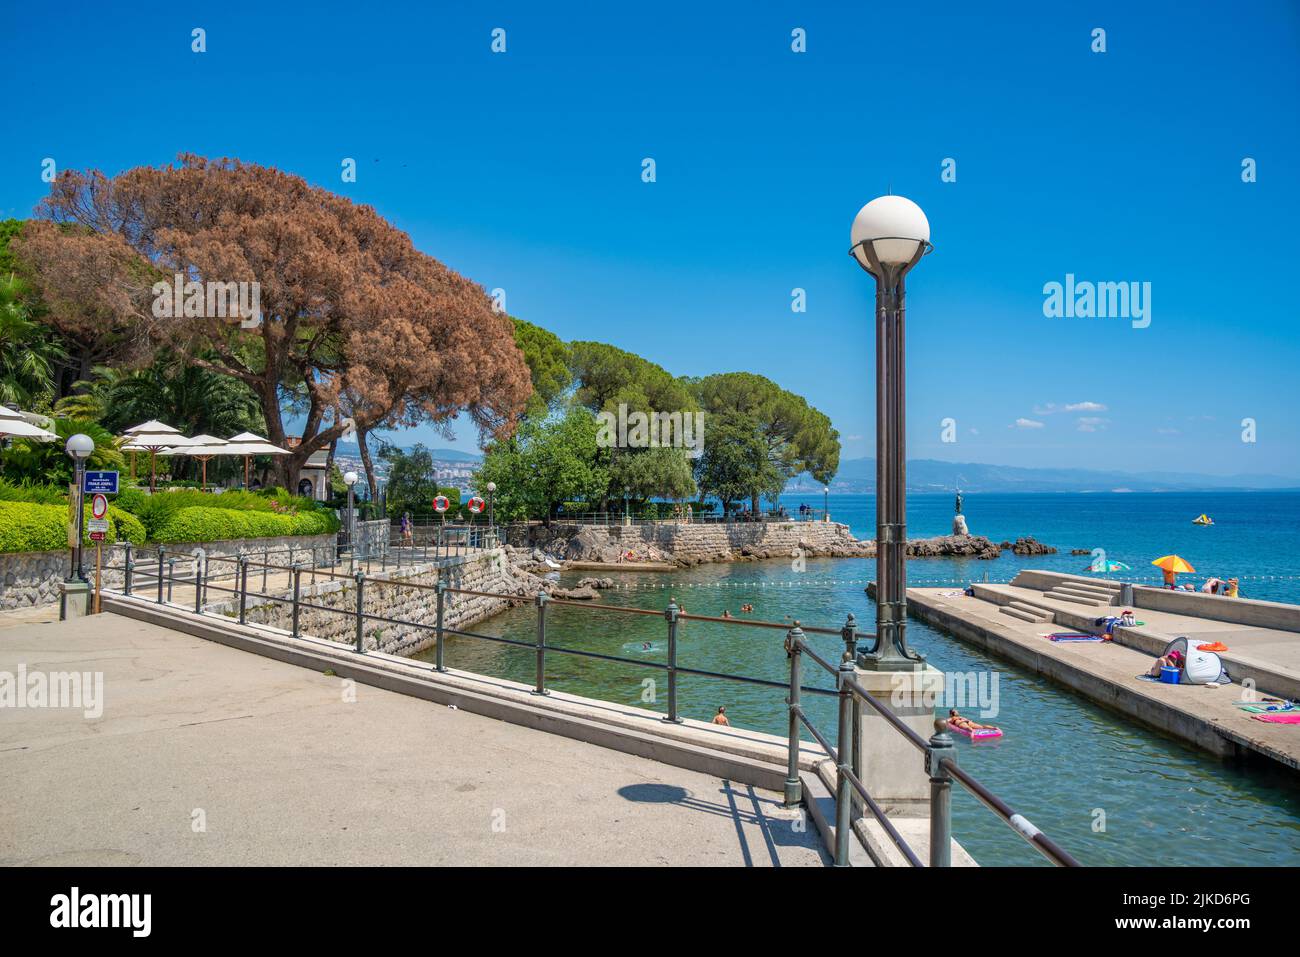 Blick auf die felsige Bucht und den Lungomare, Promenade und Maiden mit der Möwenstatue, Opatija, Kvarner Bucht, Kroatien, Europa Stockfoto